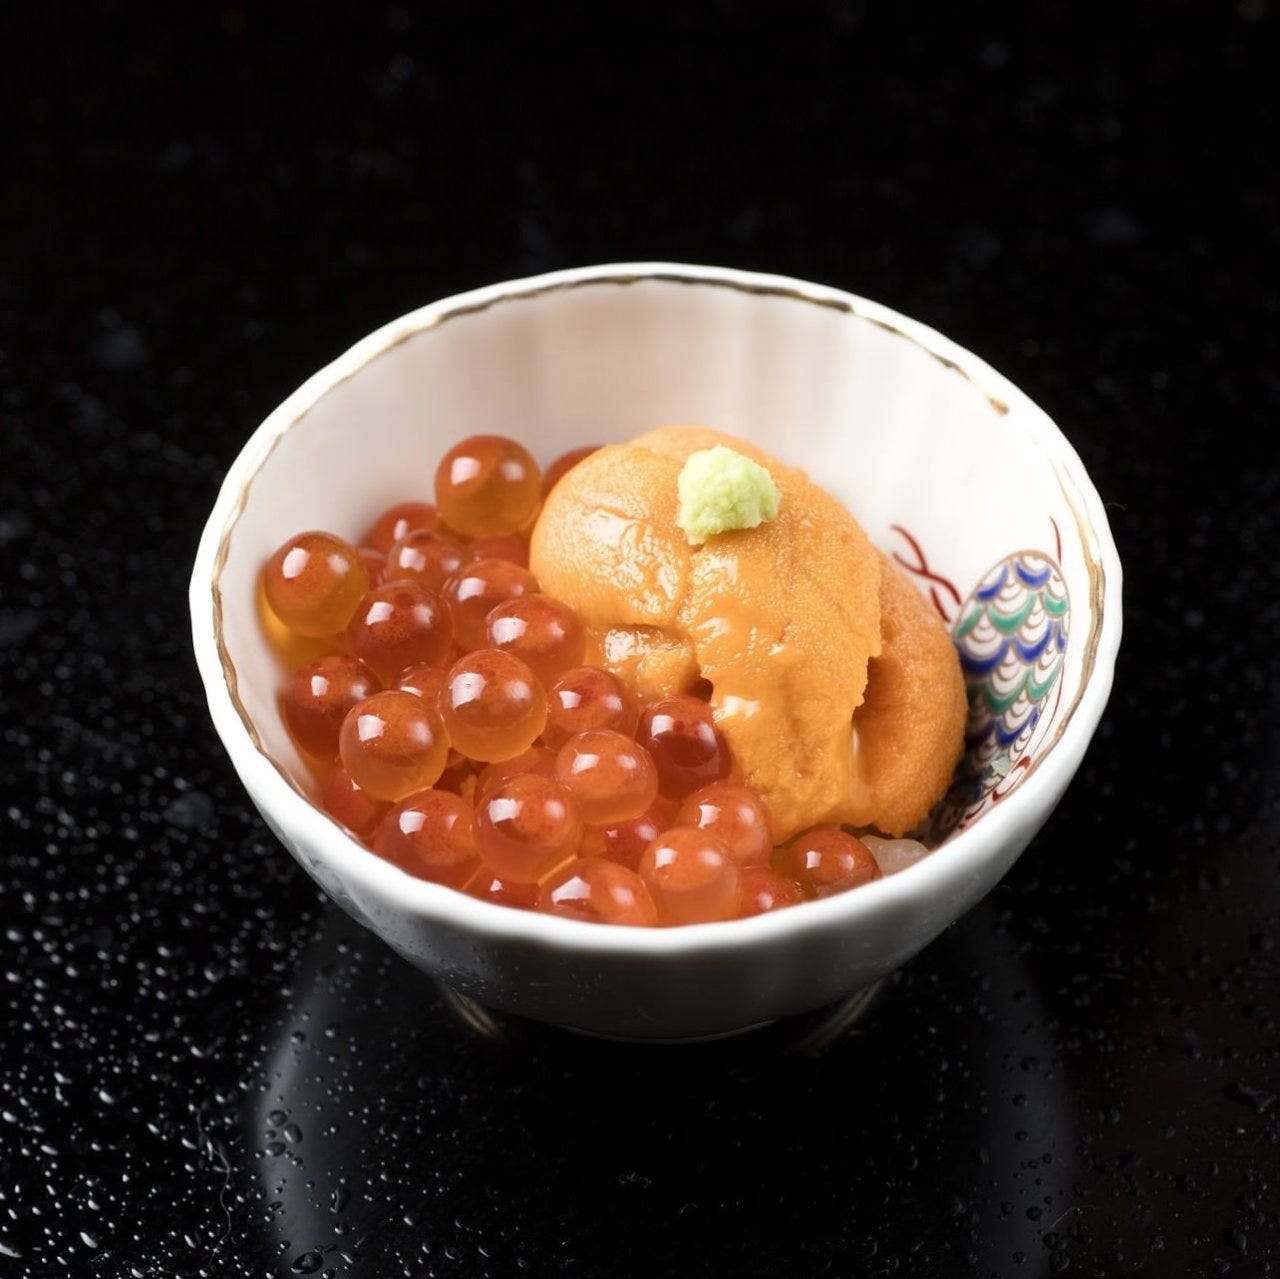 Sushi Yu image